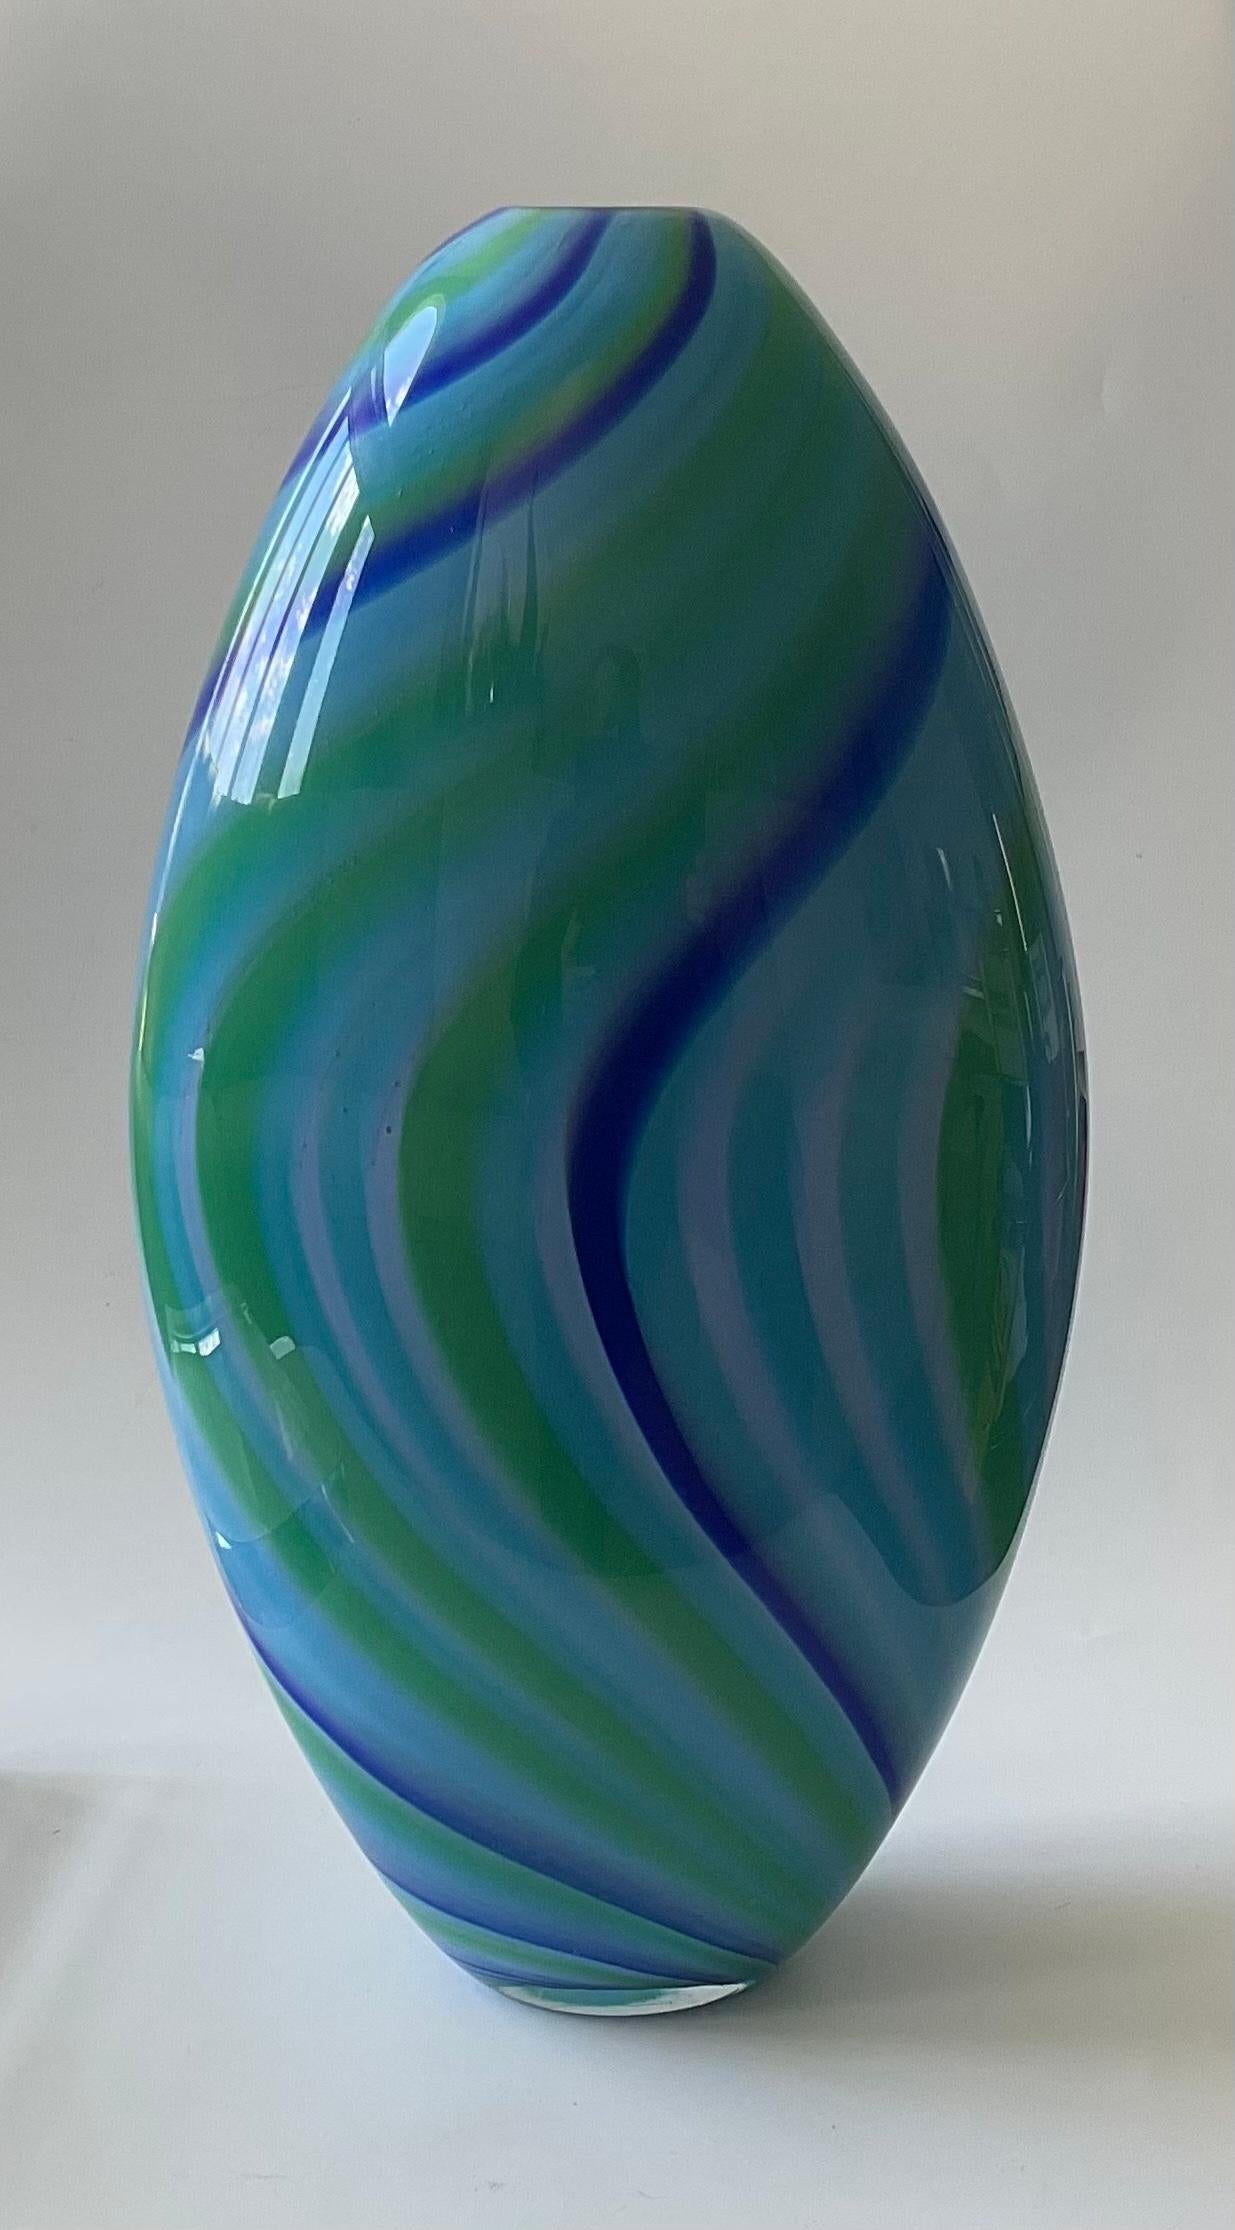 Große Vase Seguso Viro vibrierenden blauen Murano Glas signiert und nummeriert. Wunderschönes, wirbelndes Streifendesign in leuchtenden Farben.